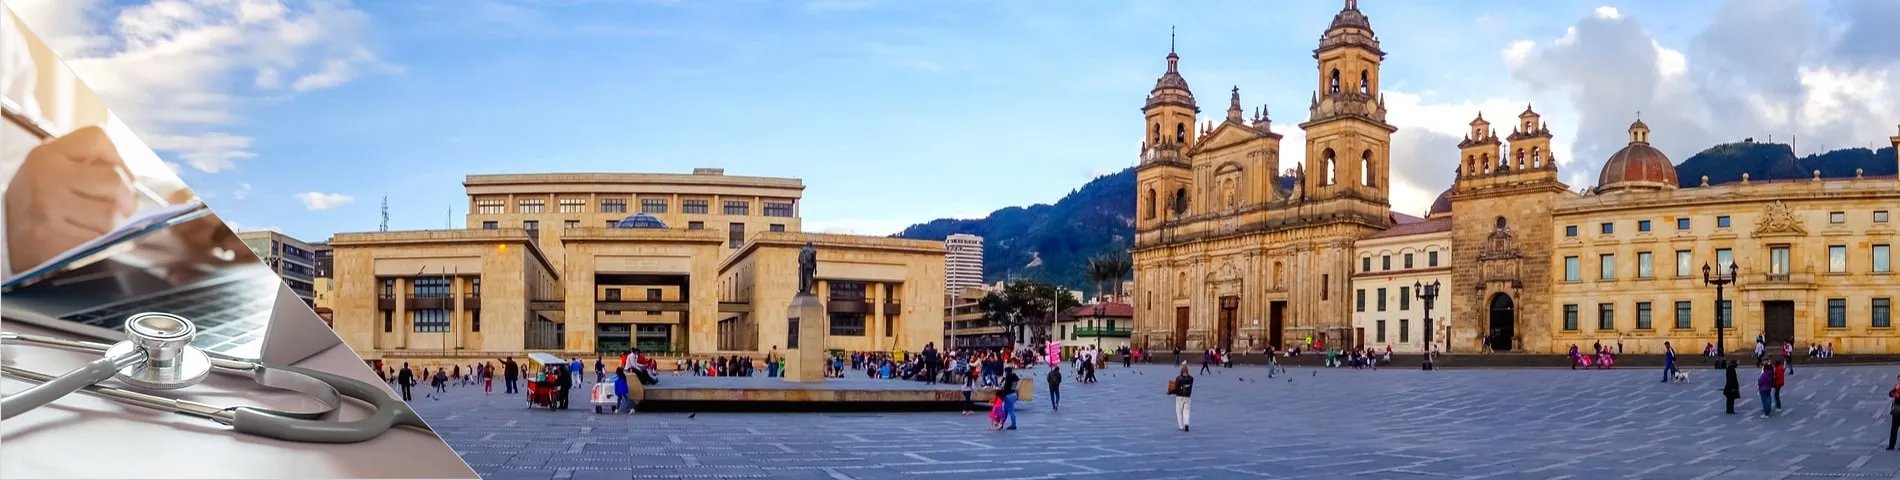 Богота - Испанский для Докторов и Медсестер